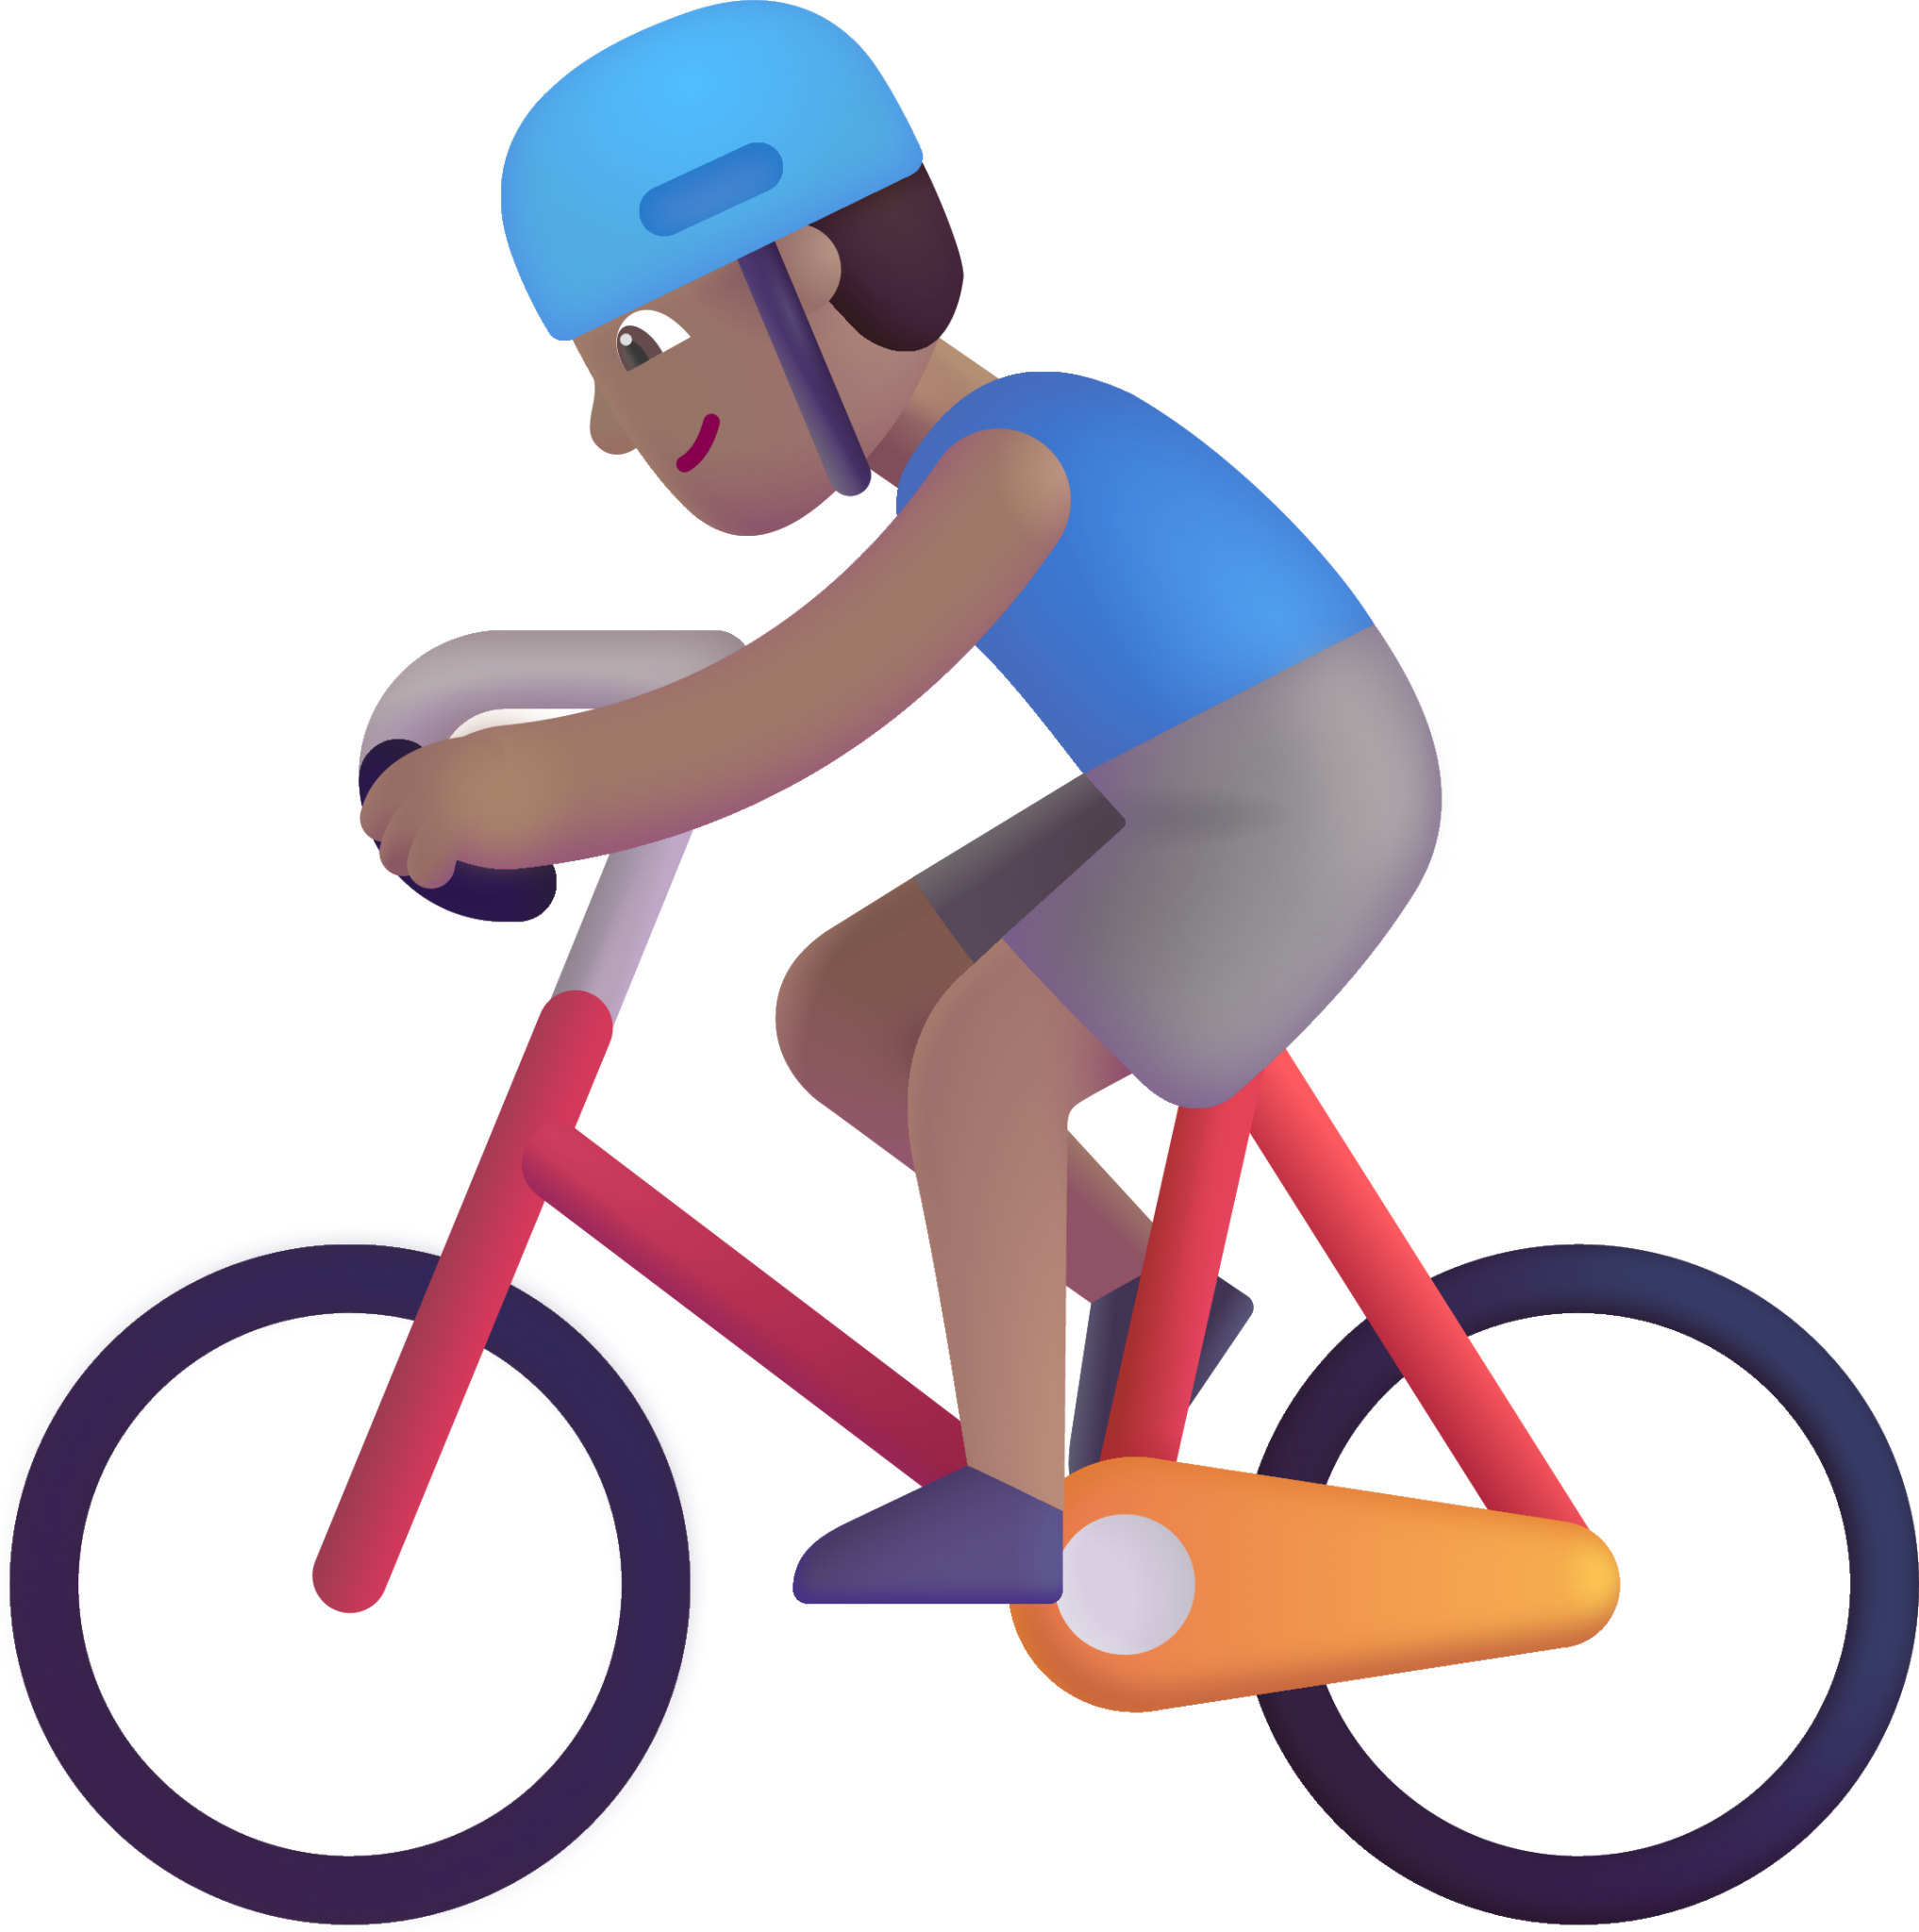 man biking medium emoji